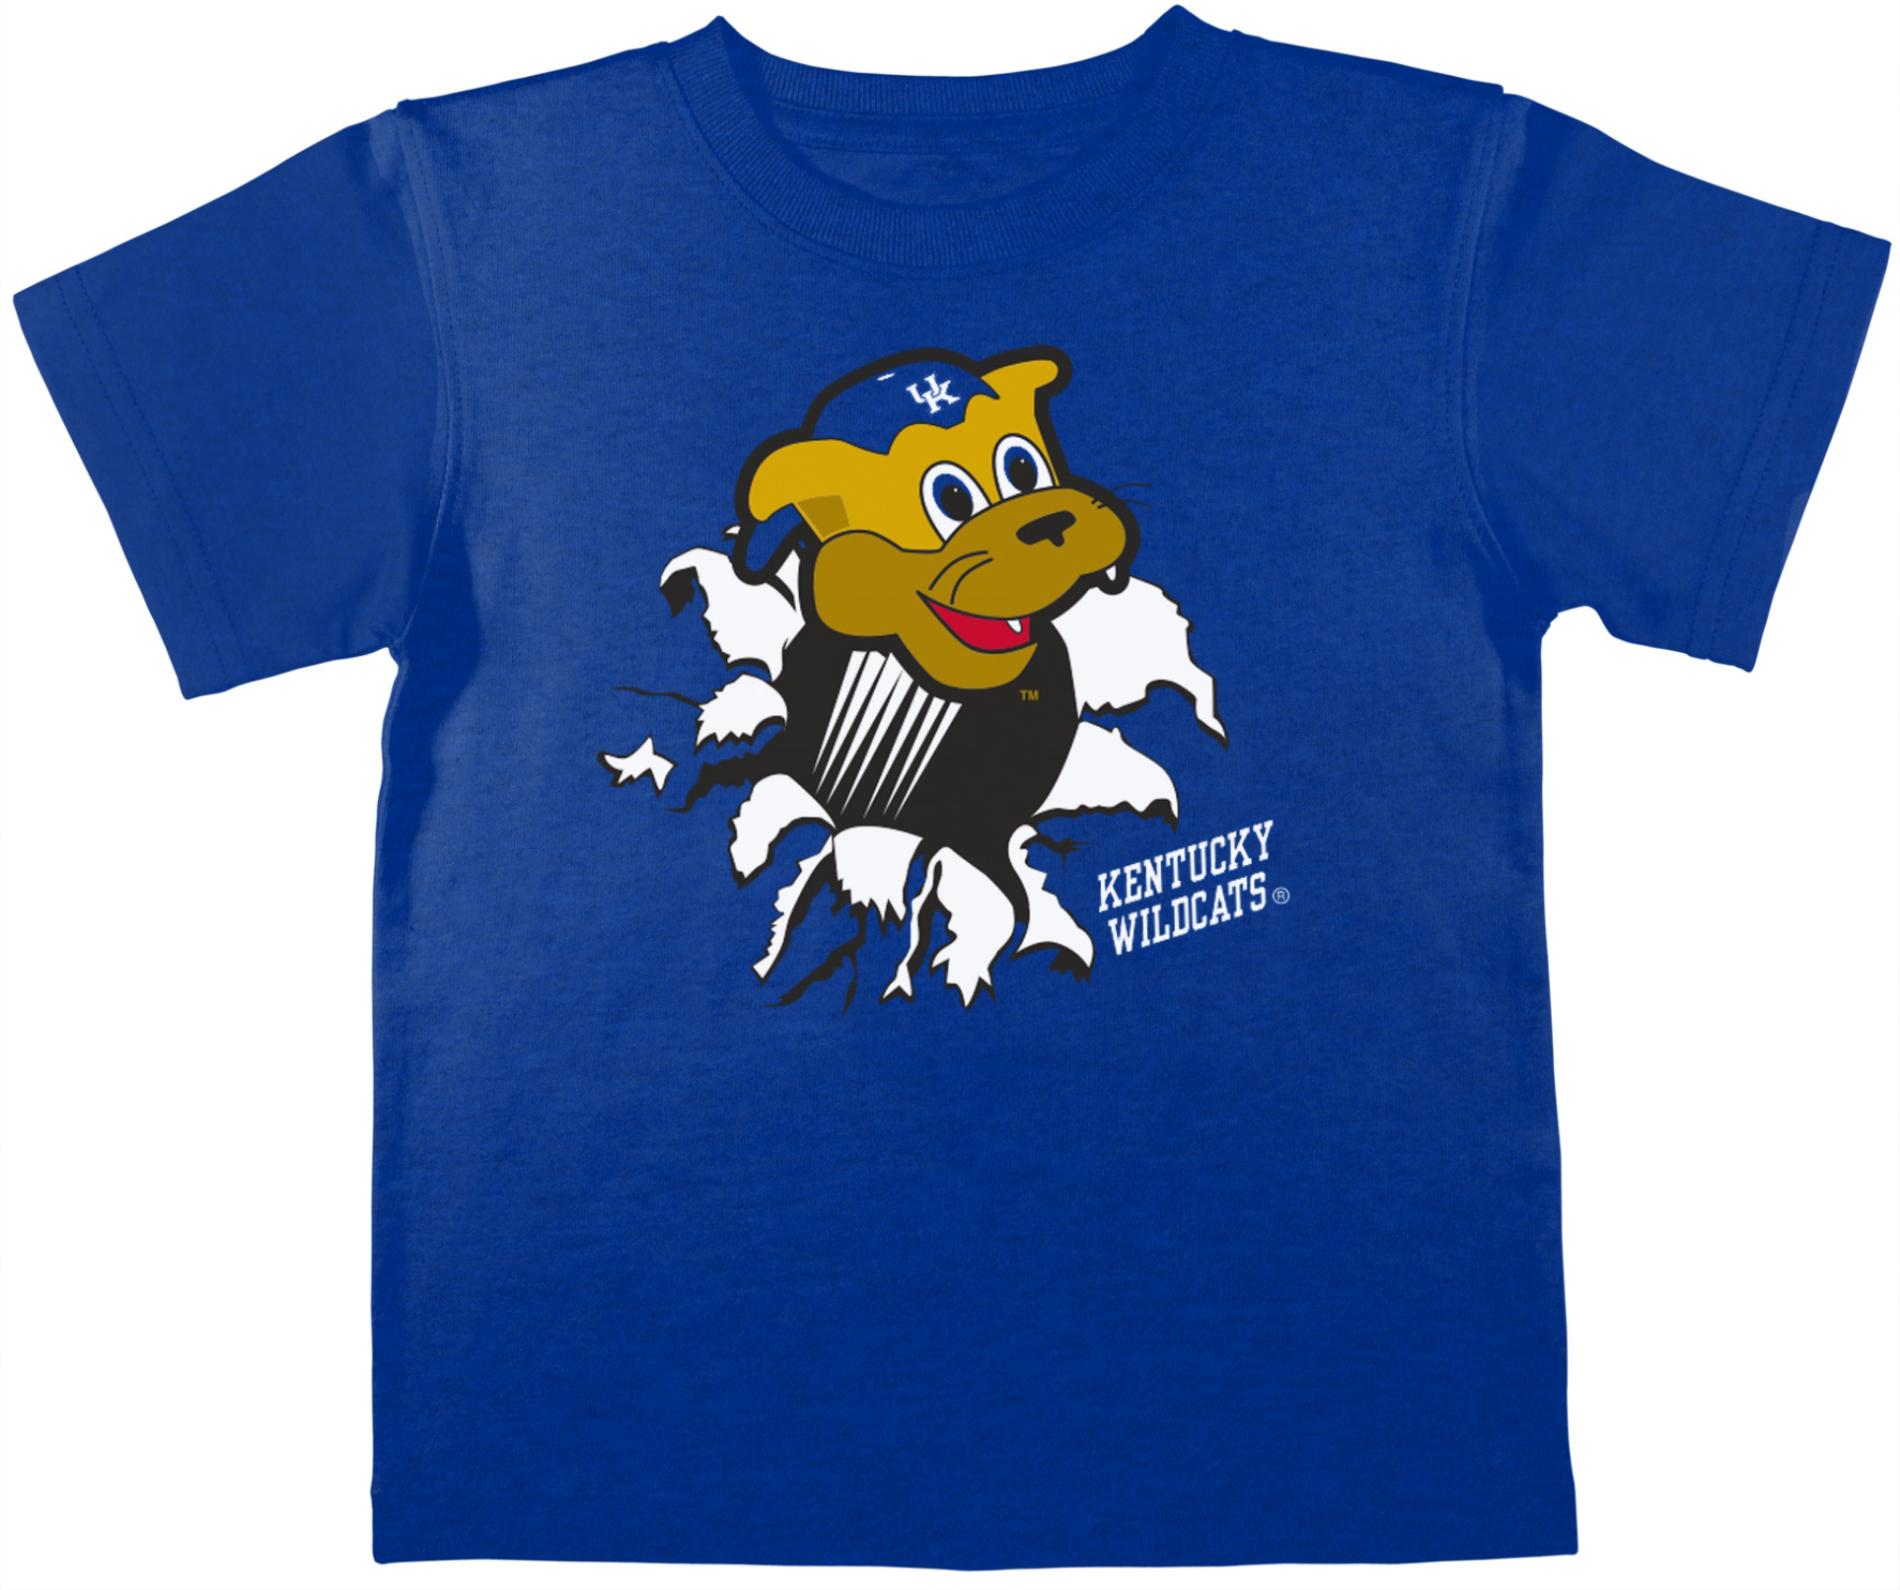 NCAA Toddler Boy's T-Shirt - University of Kentucky Wildcats